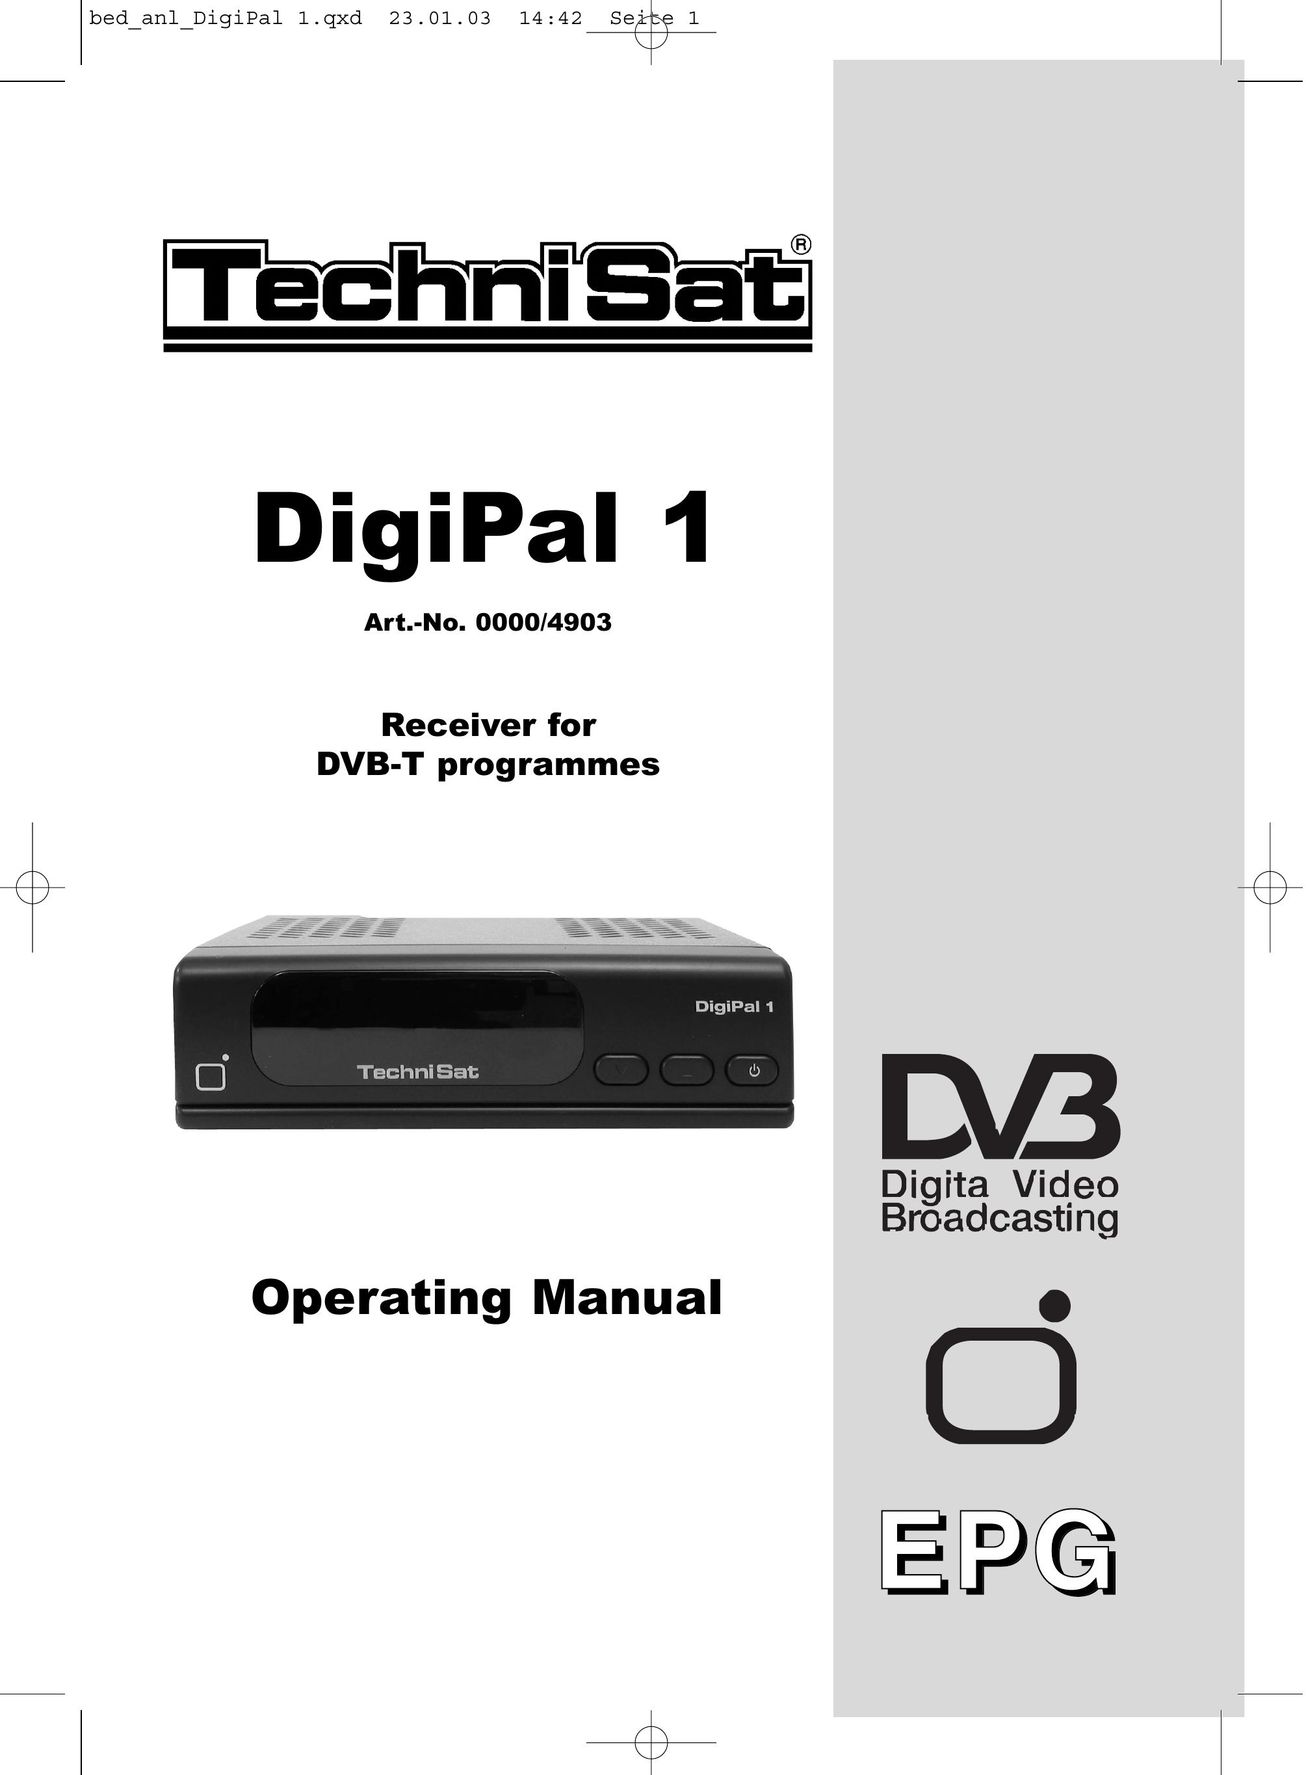 TechniSat DigiPal1 Car Video System User Manual